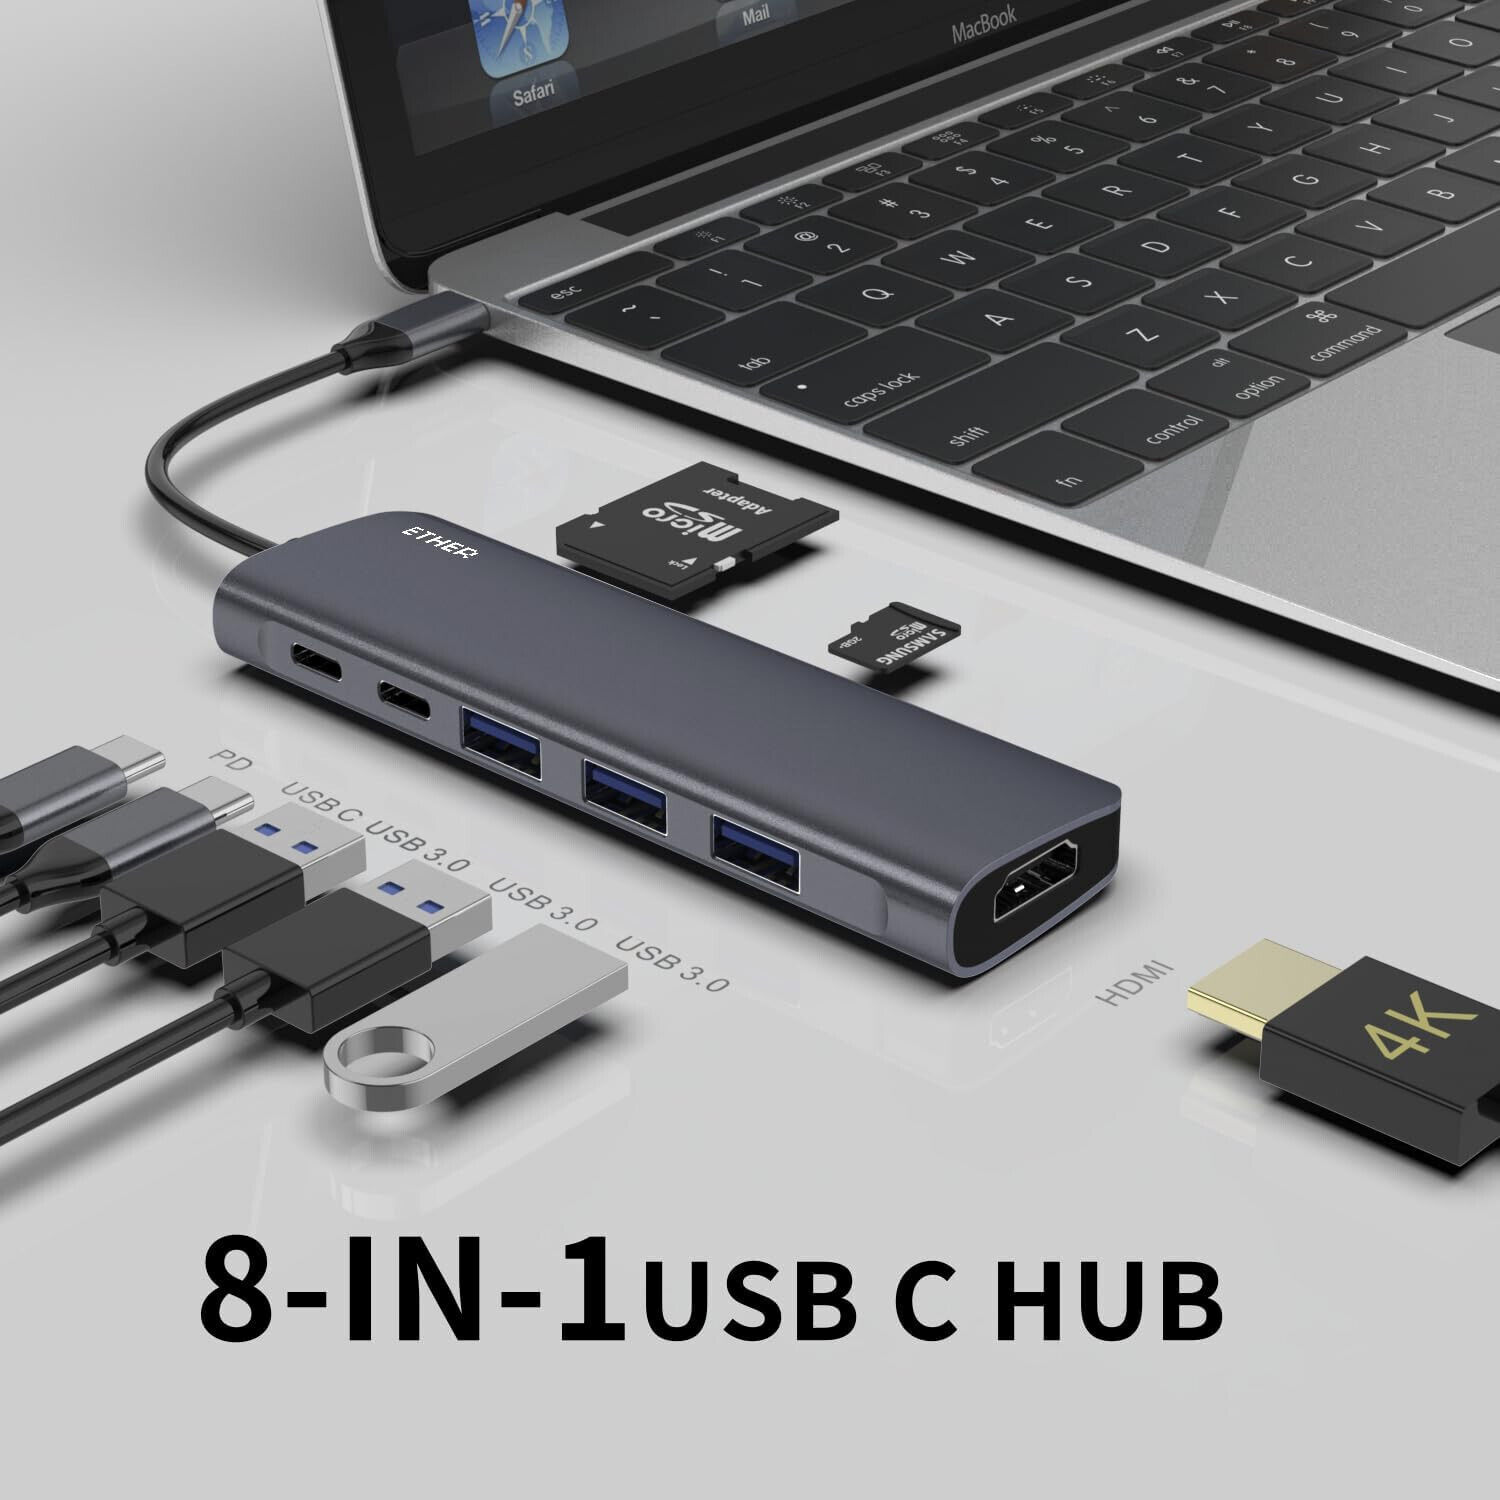 USB C HDMI Docking Station, 100W, 4K, 5 Gbps USB C + 3 USB 3 ports, SD + MicroSD